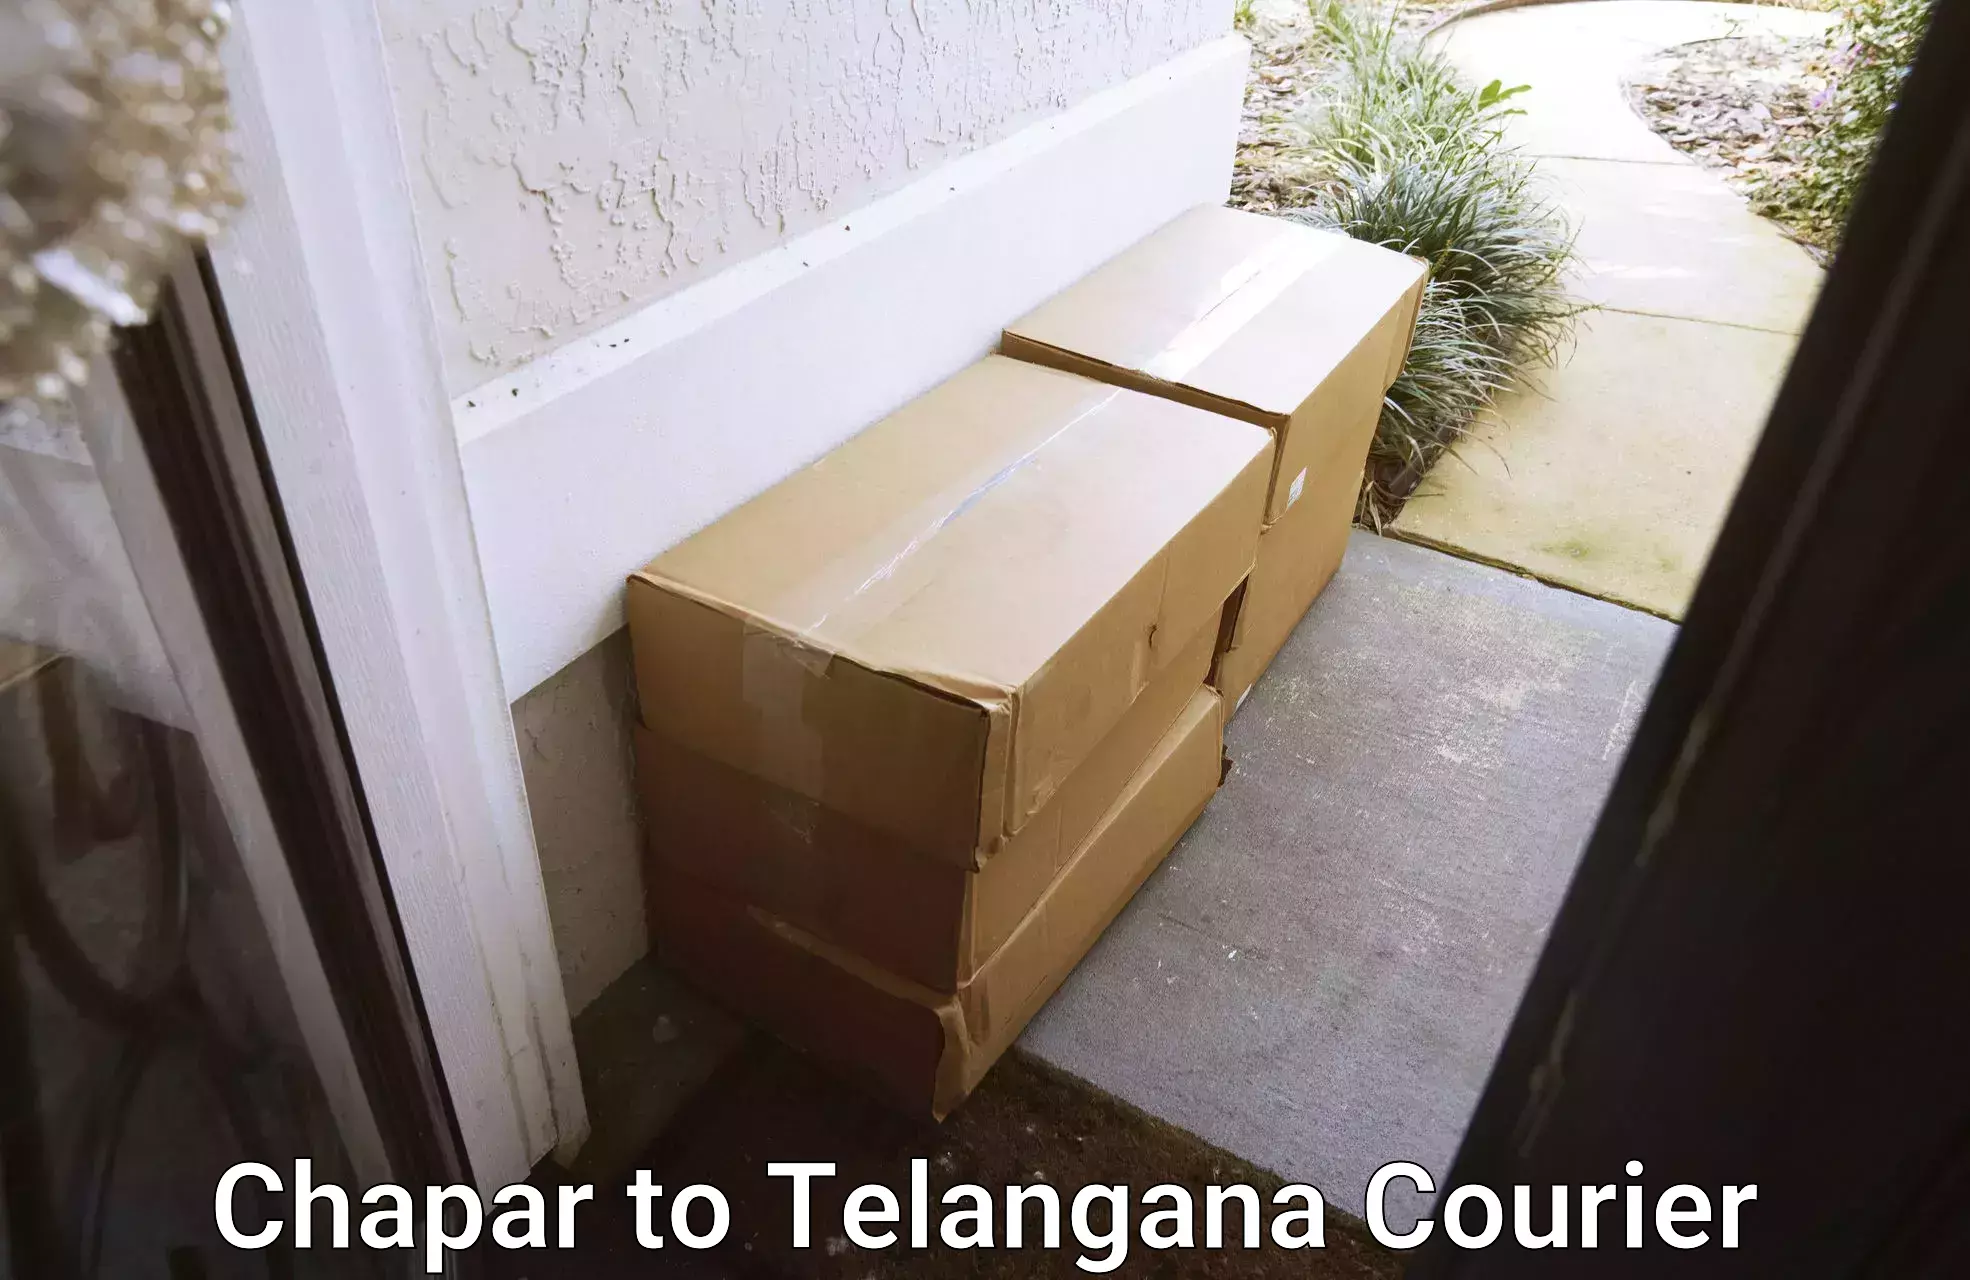 High-capacity parcel service Chapar to Jannaram